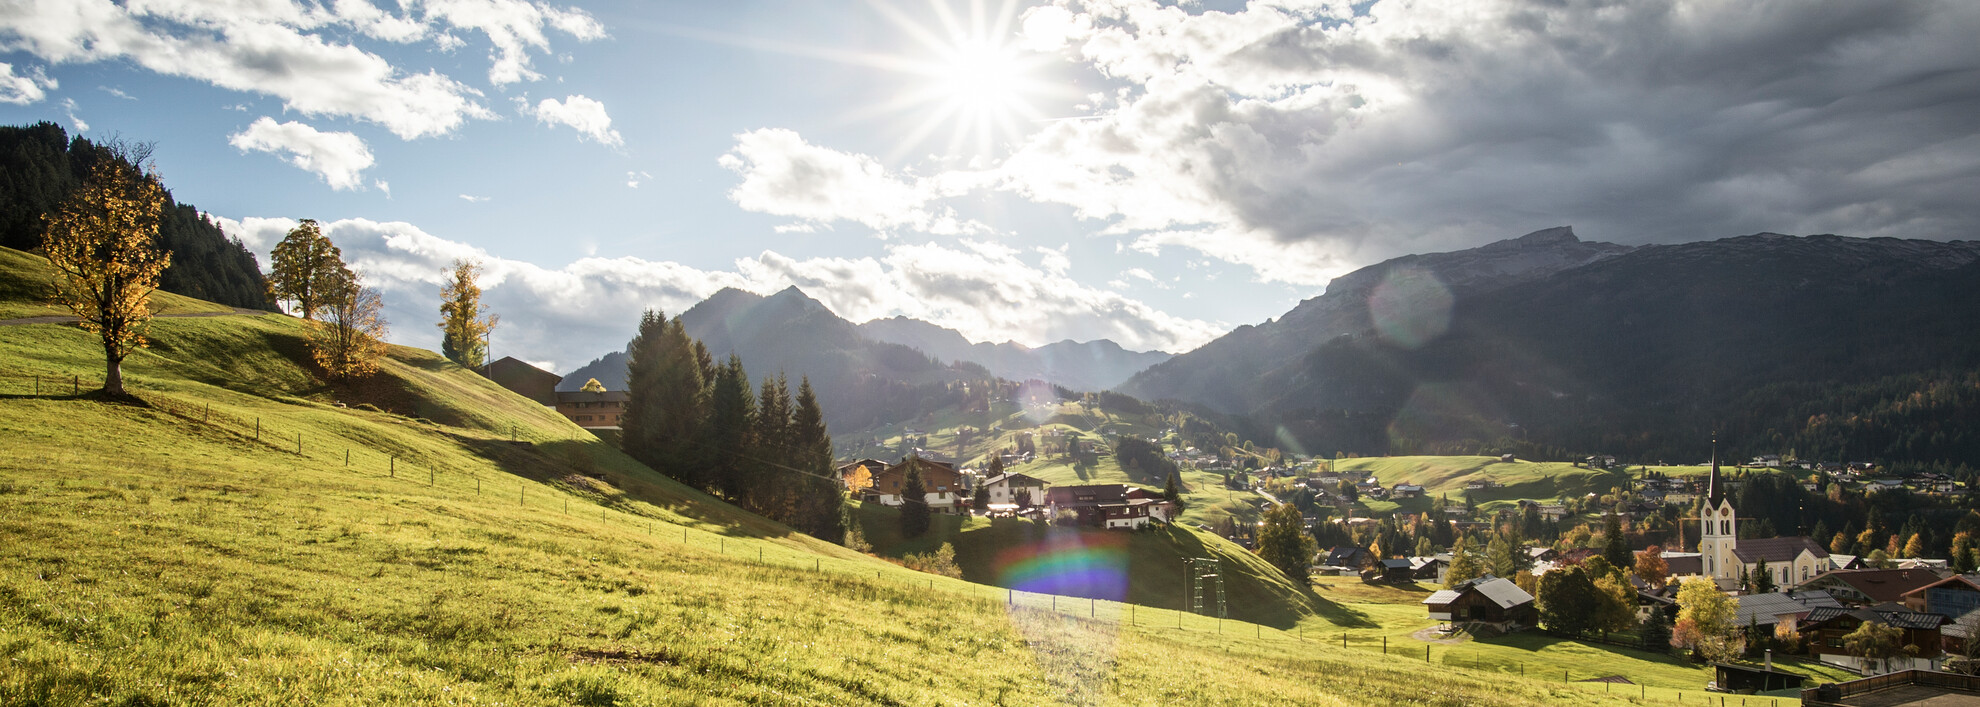 Urlaub im Kleinwalsertal - Alpen-Guide